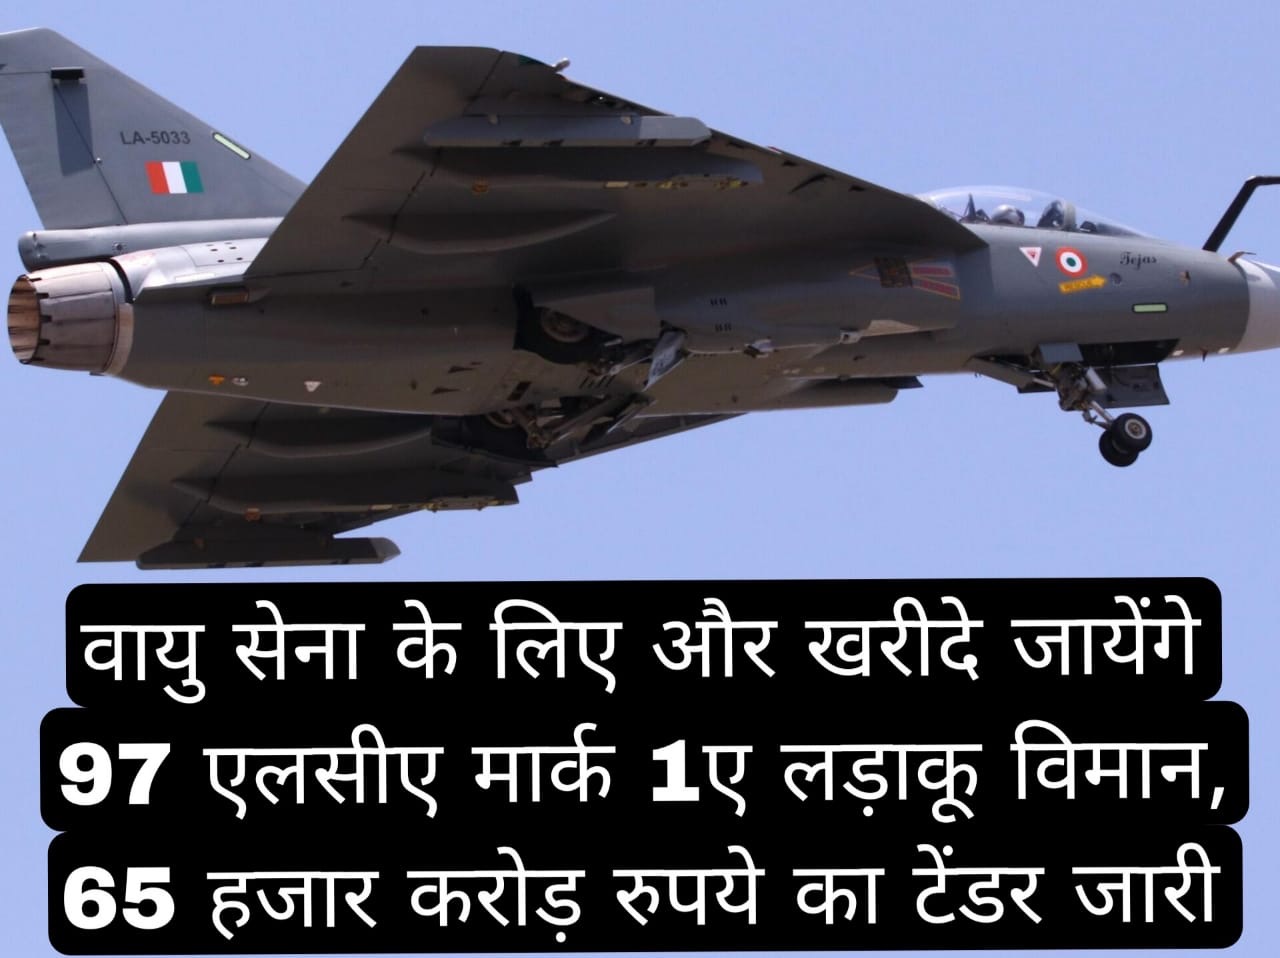 वायु सेना के लिए और खरीदे जायेंगे 97 एलसीए मार्क 1ए लड़ाकू विमान,65 हजार करोड़ रुपये का टेंडर जारी